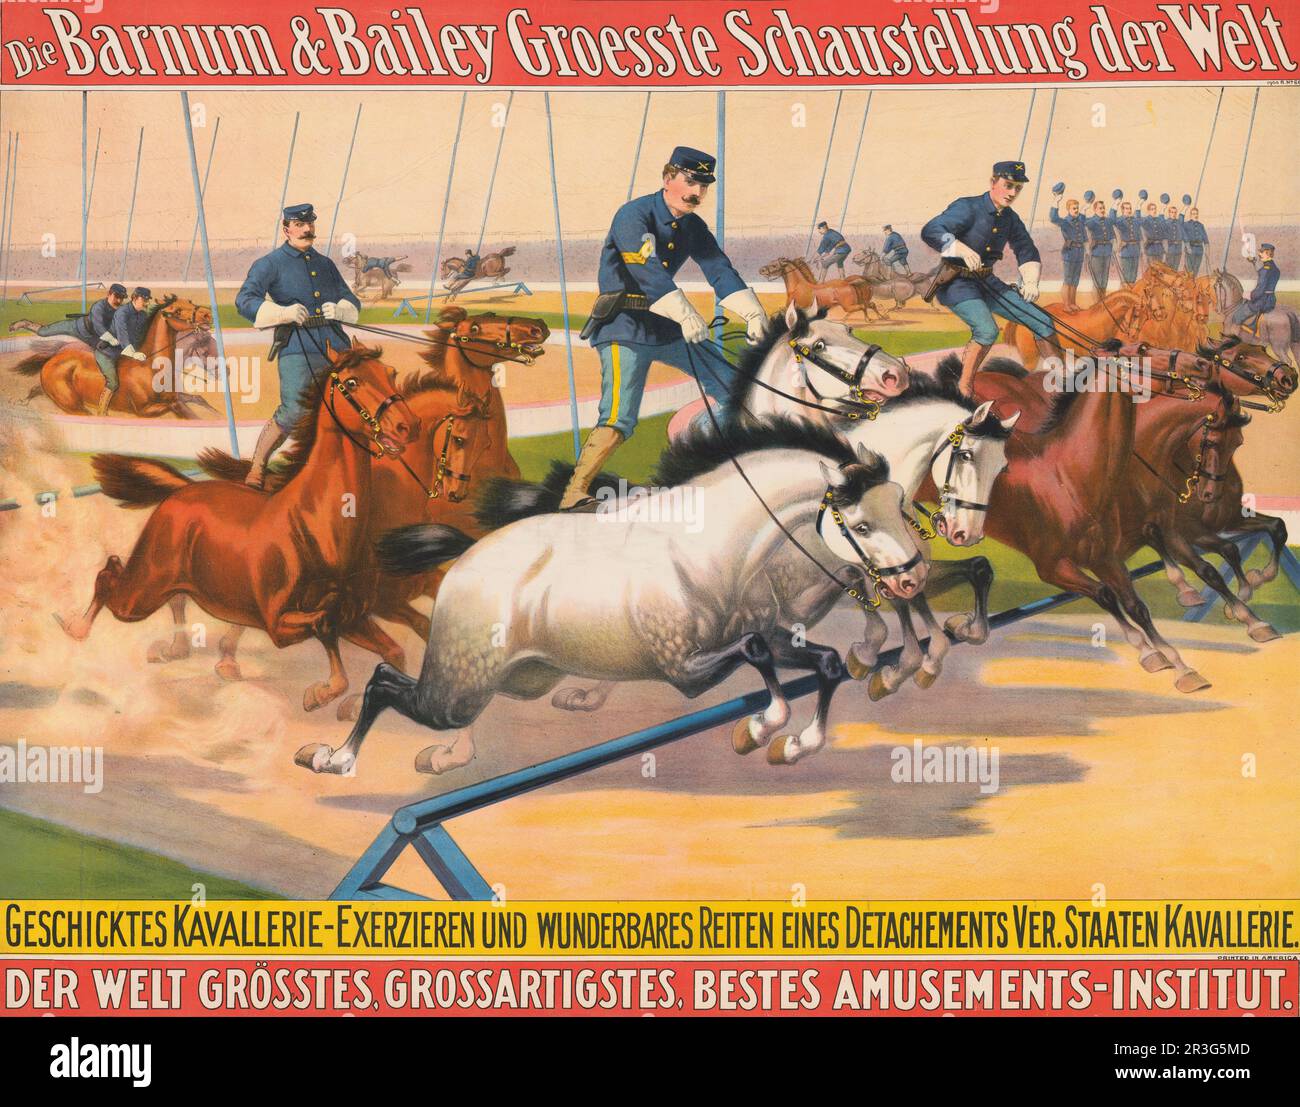 Manifesto del circo tedesco d'epoca Barnum & Bailey di uomini in divise militari che corrono cavalli intorno ad un tracciato, circa 1900. Foto Stock